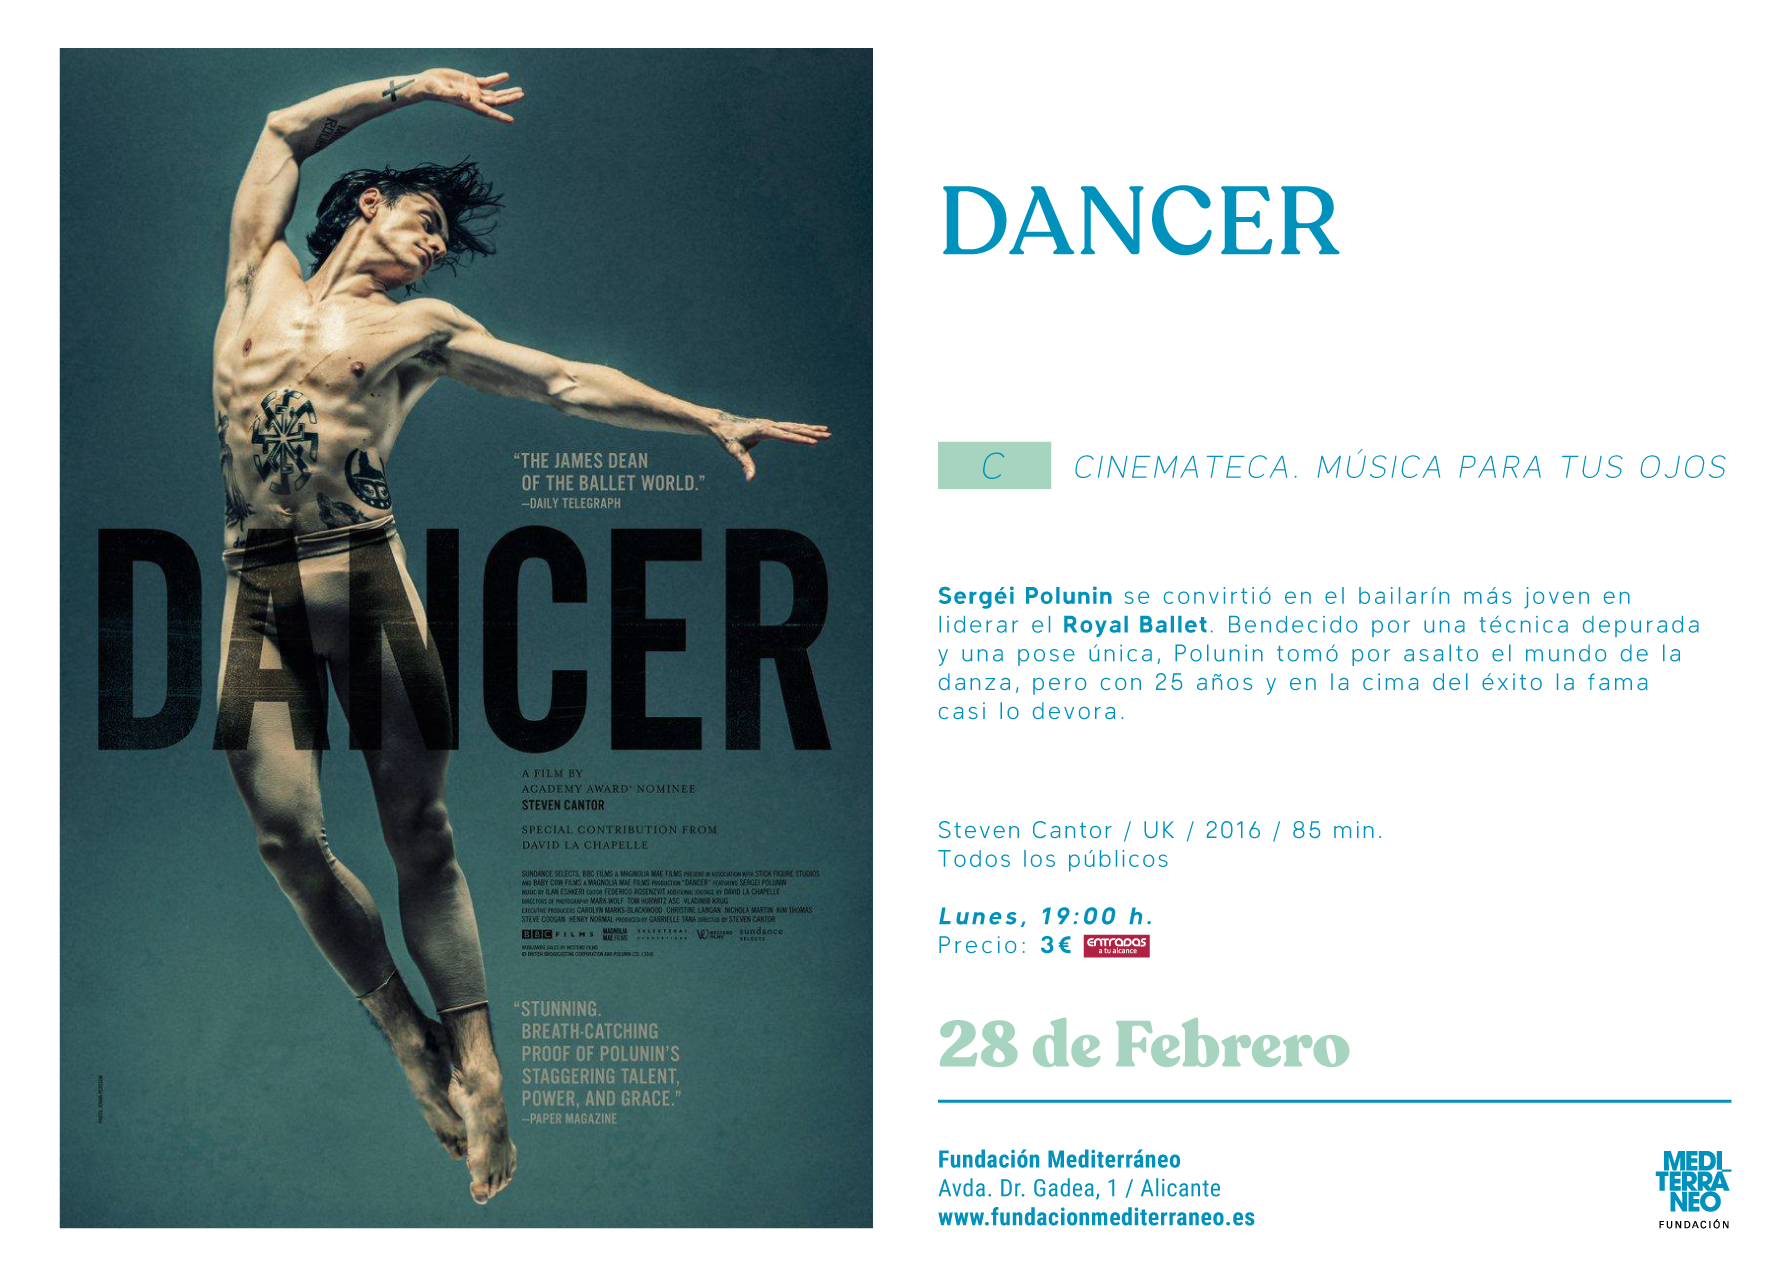 cinemateca-dancer-de-steven-cantor-61f96b601cf594.87866728.png